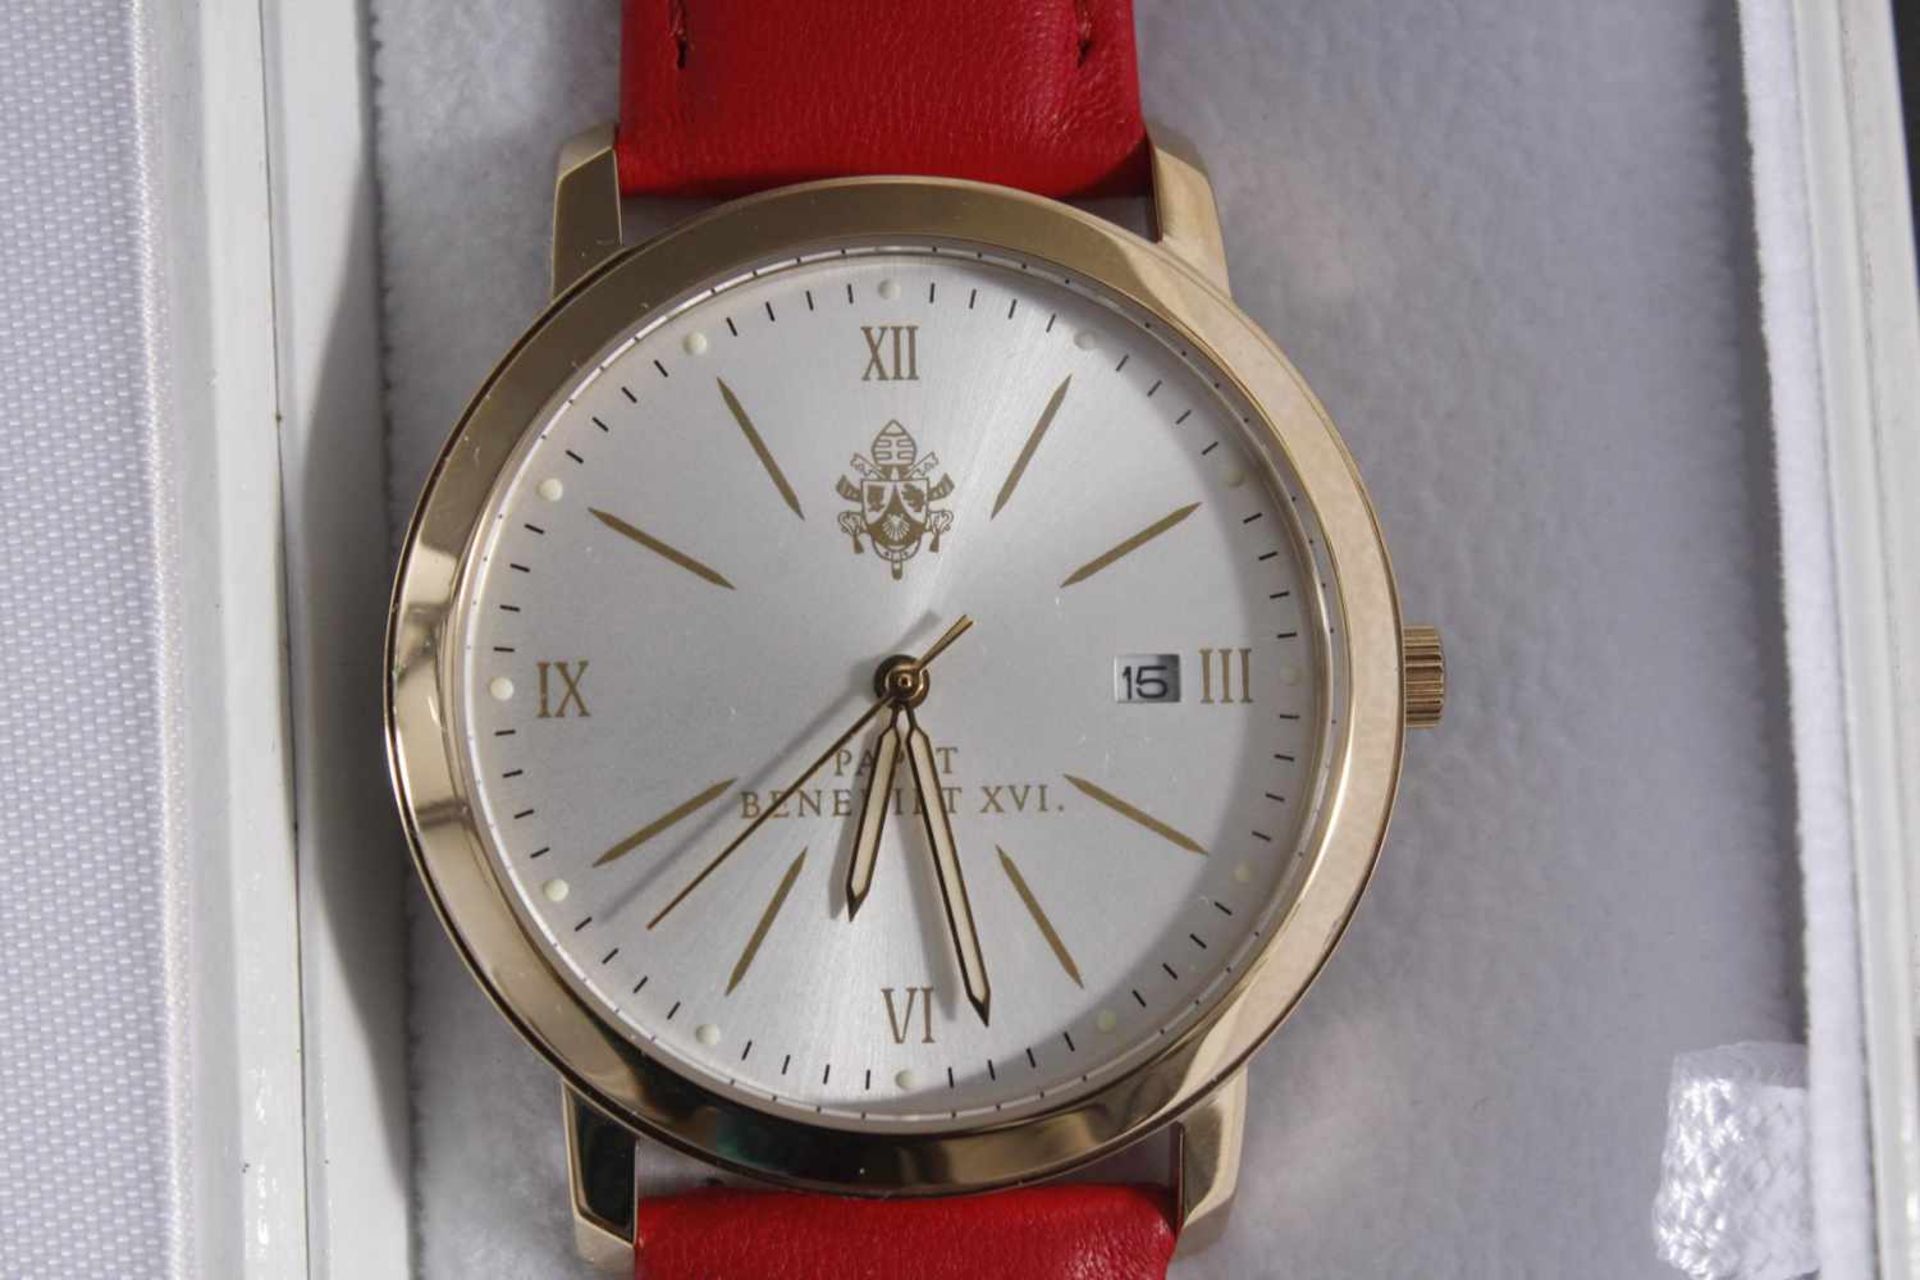 2 Armbanduhren1x Armbanduhr Papst Benedikt XVI. Limitiert auf 1000 Stück. in weißer Uhrenschachtel. - Bild 3 aus 3